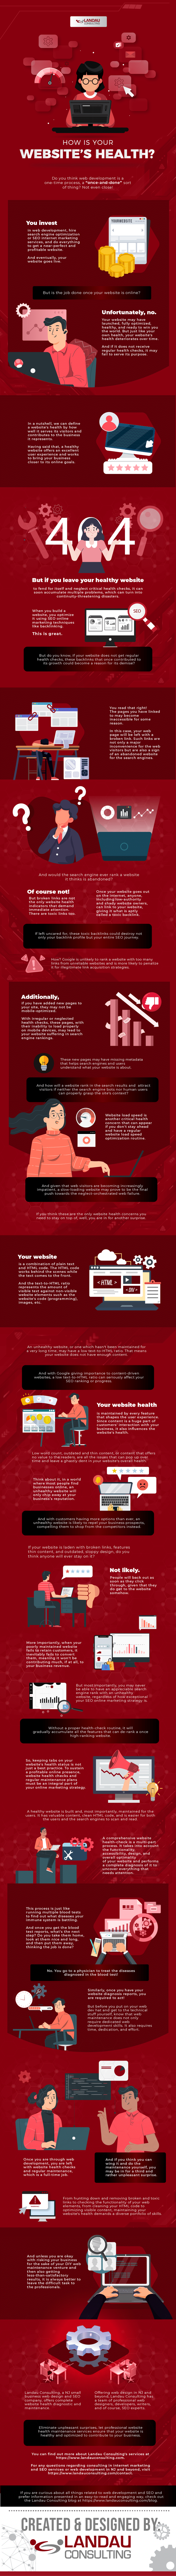 How is Your Website